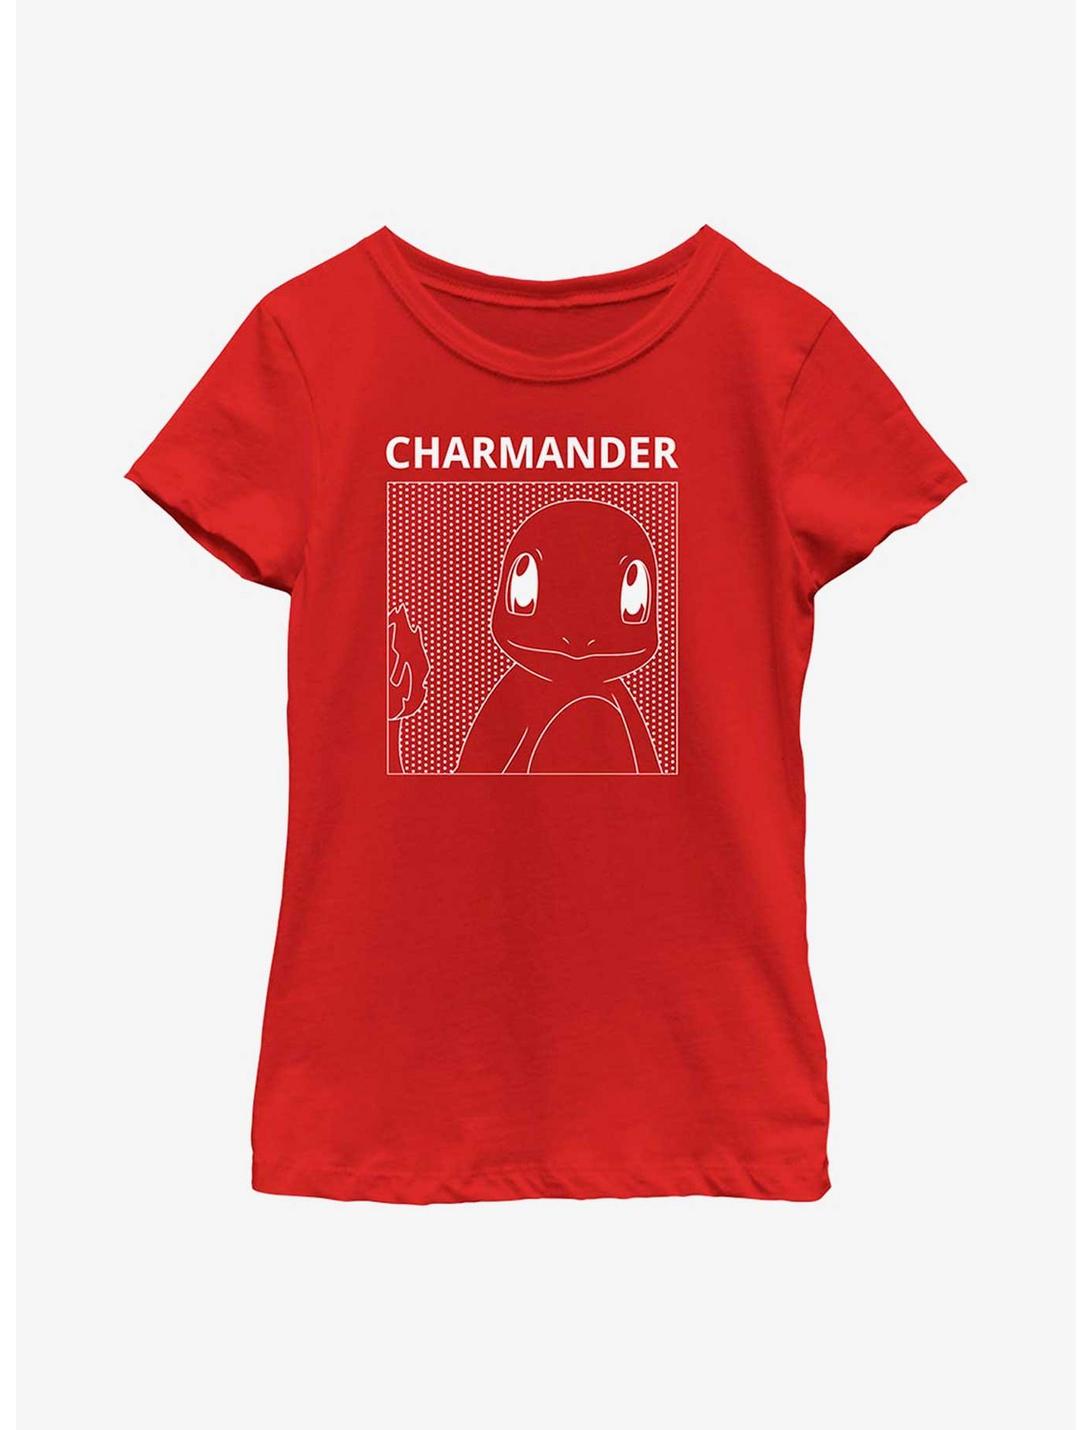 Pokémon Charmander Comic Box Youth Girls T-Shirt, RED, hi-res